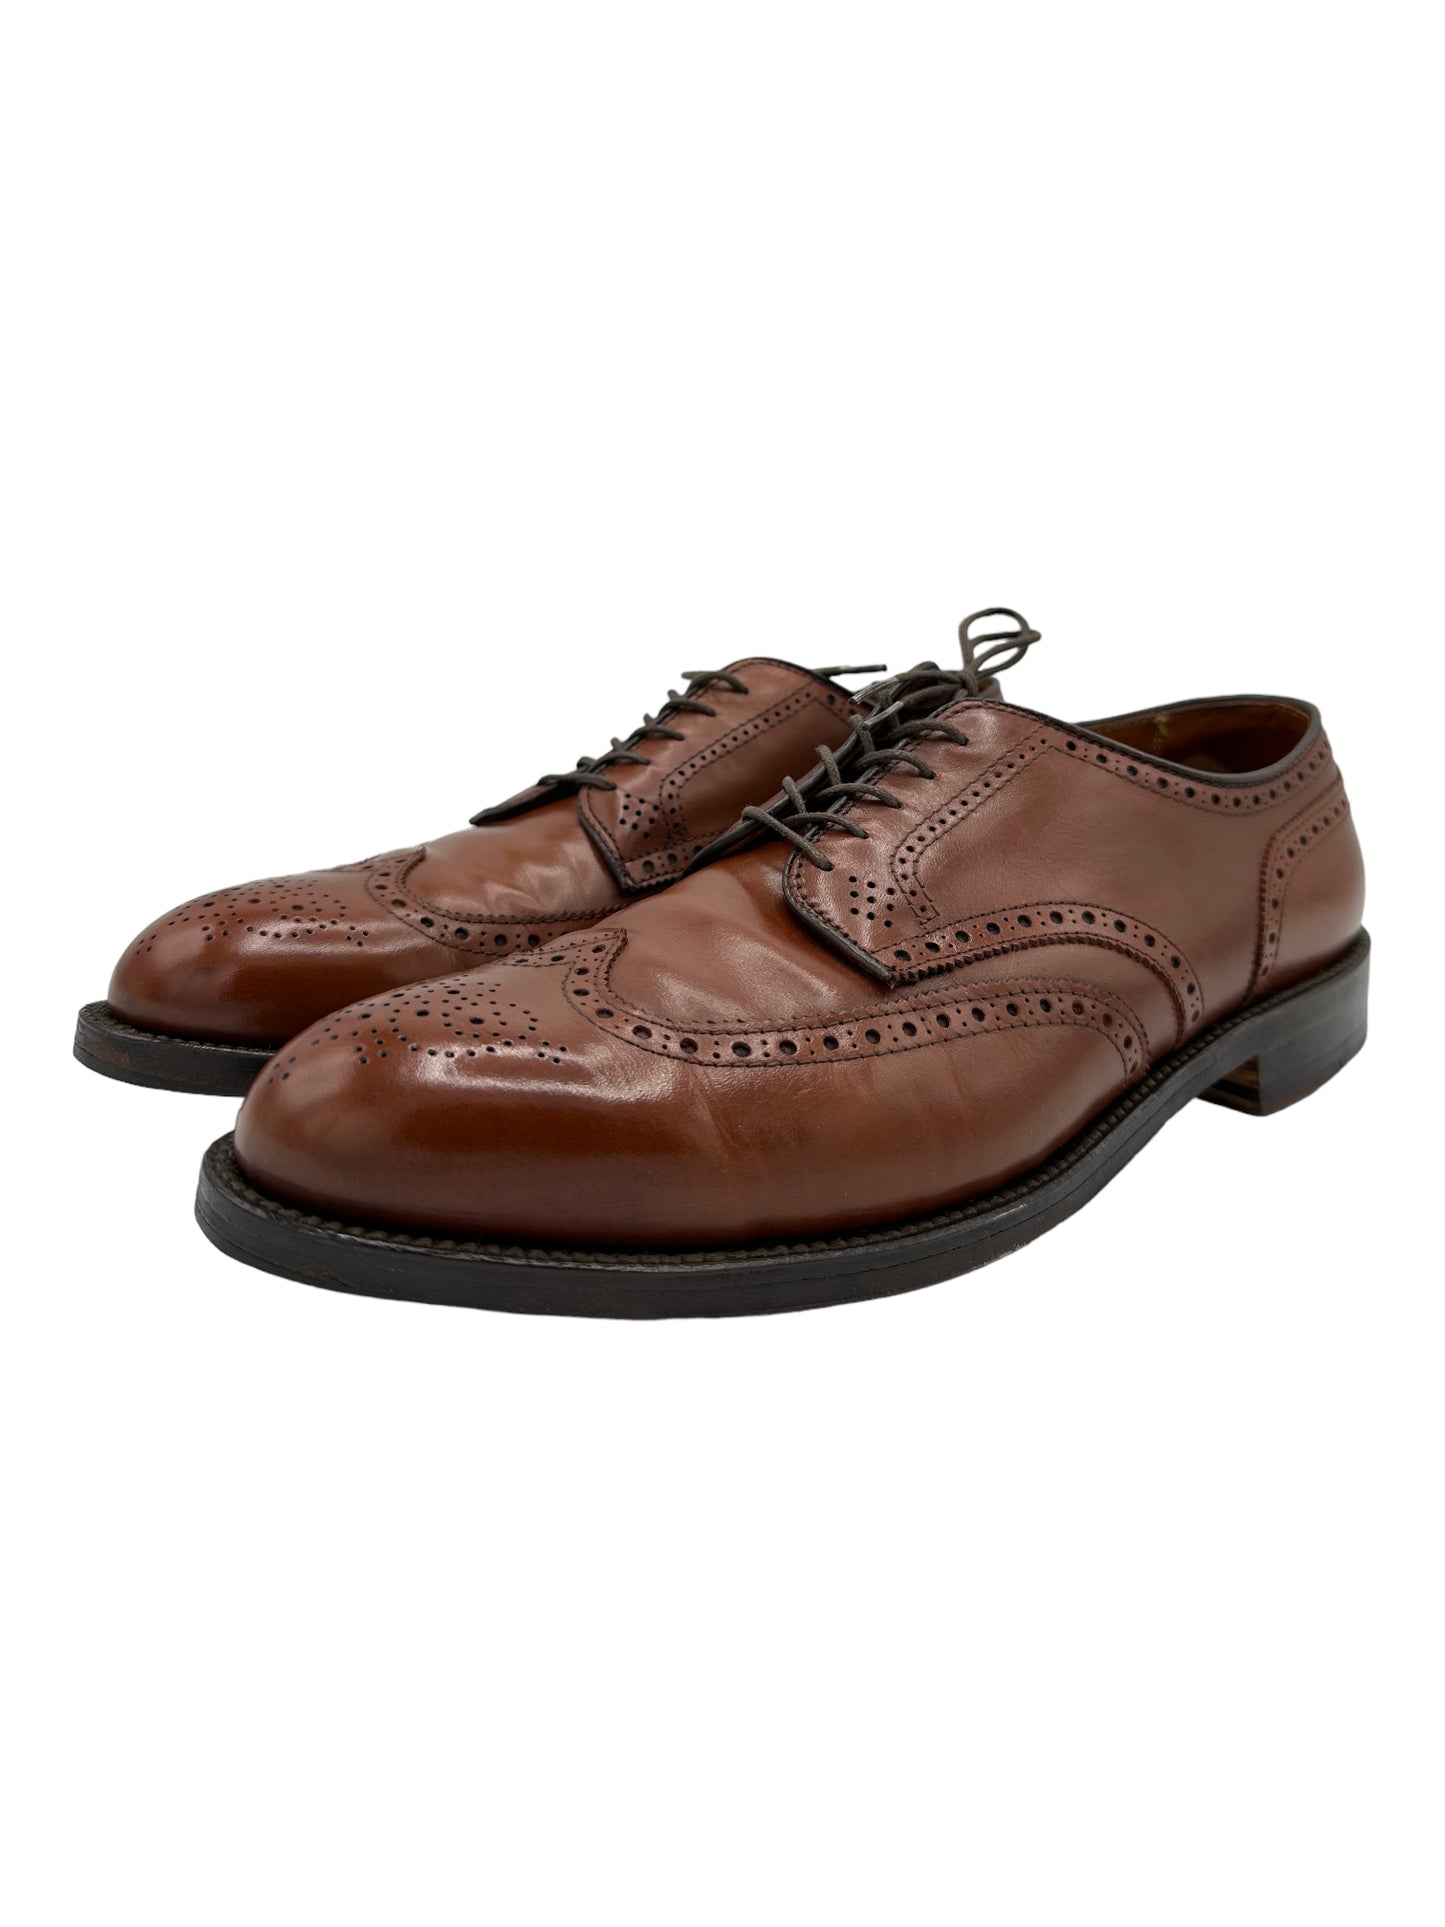 Alden 966 Wingtip Mid Brown Oxford Saddle Shoes